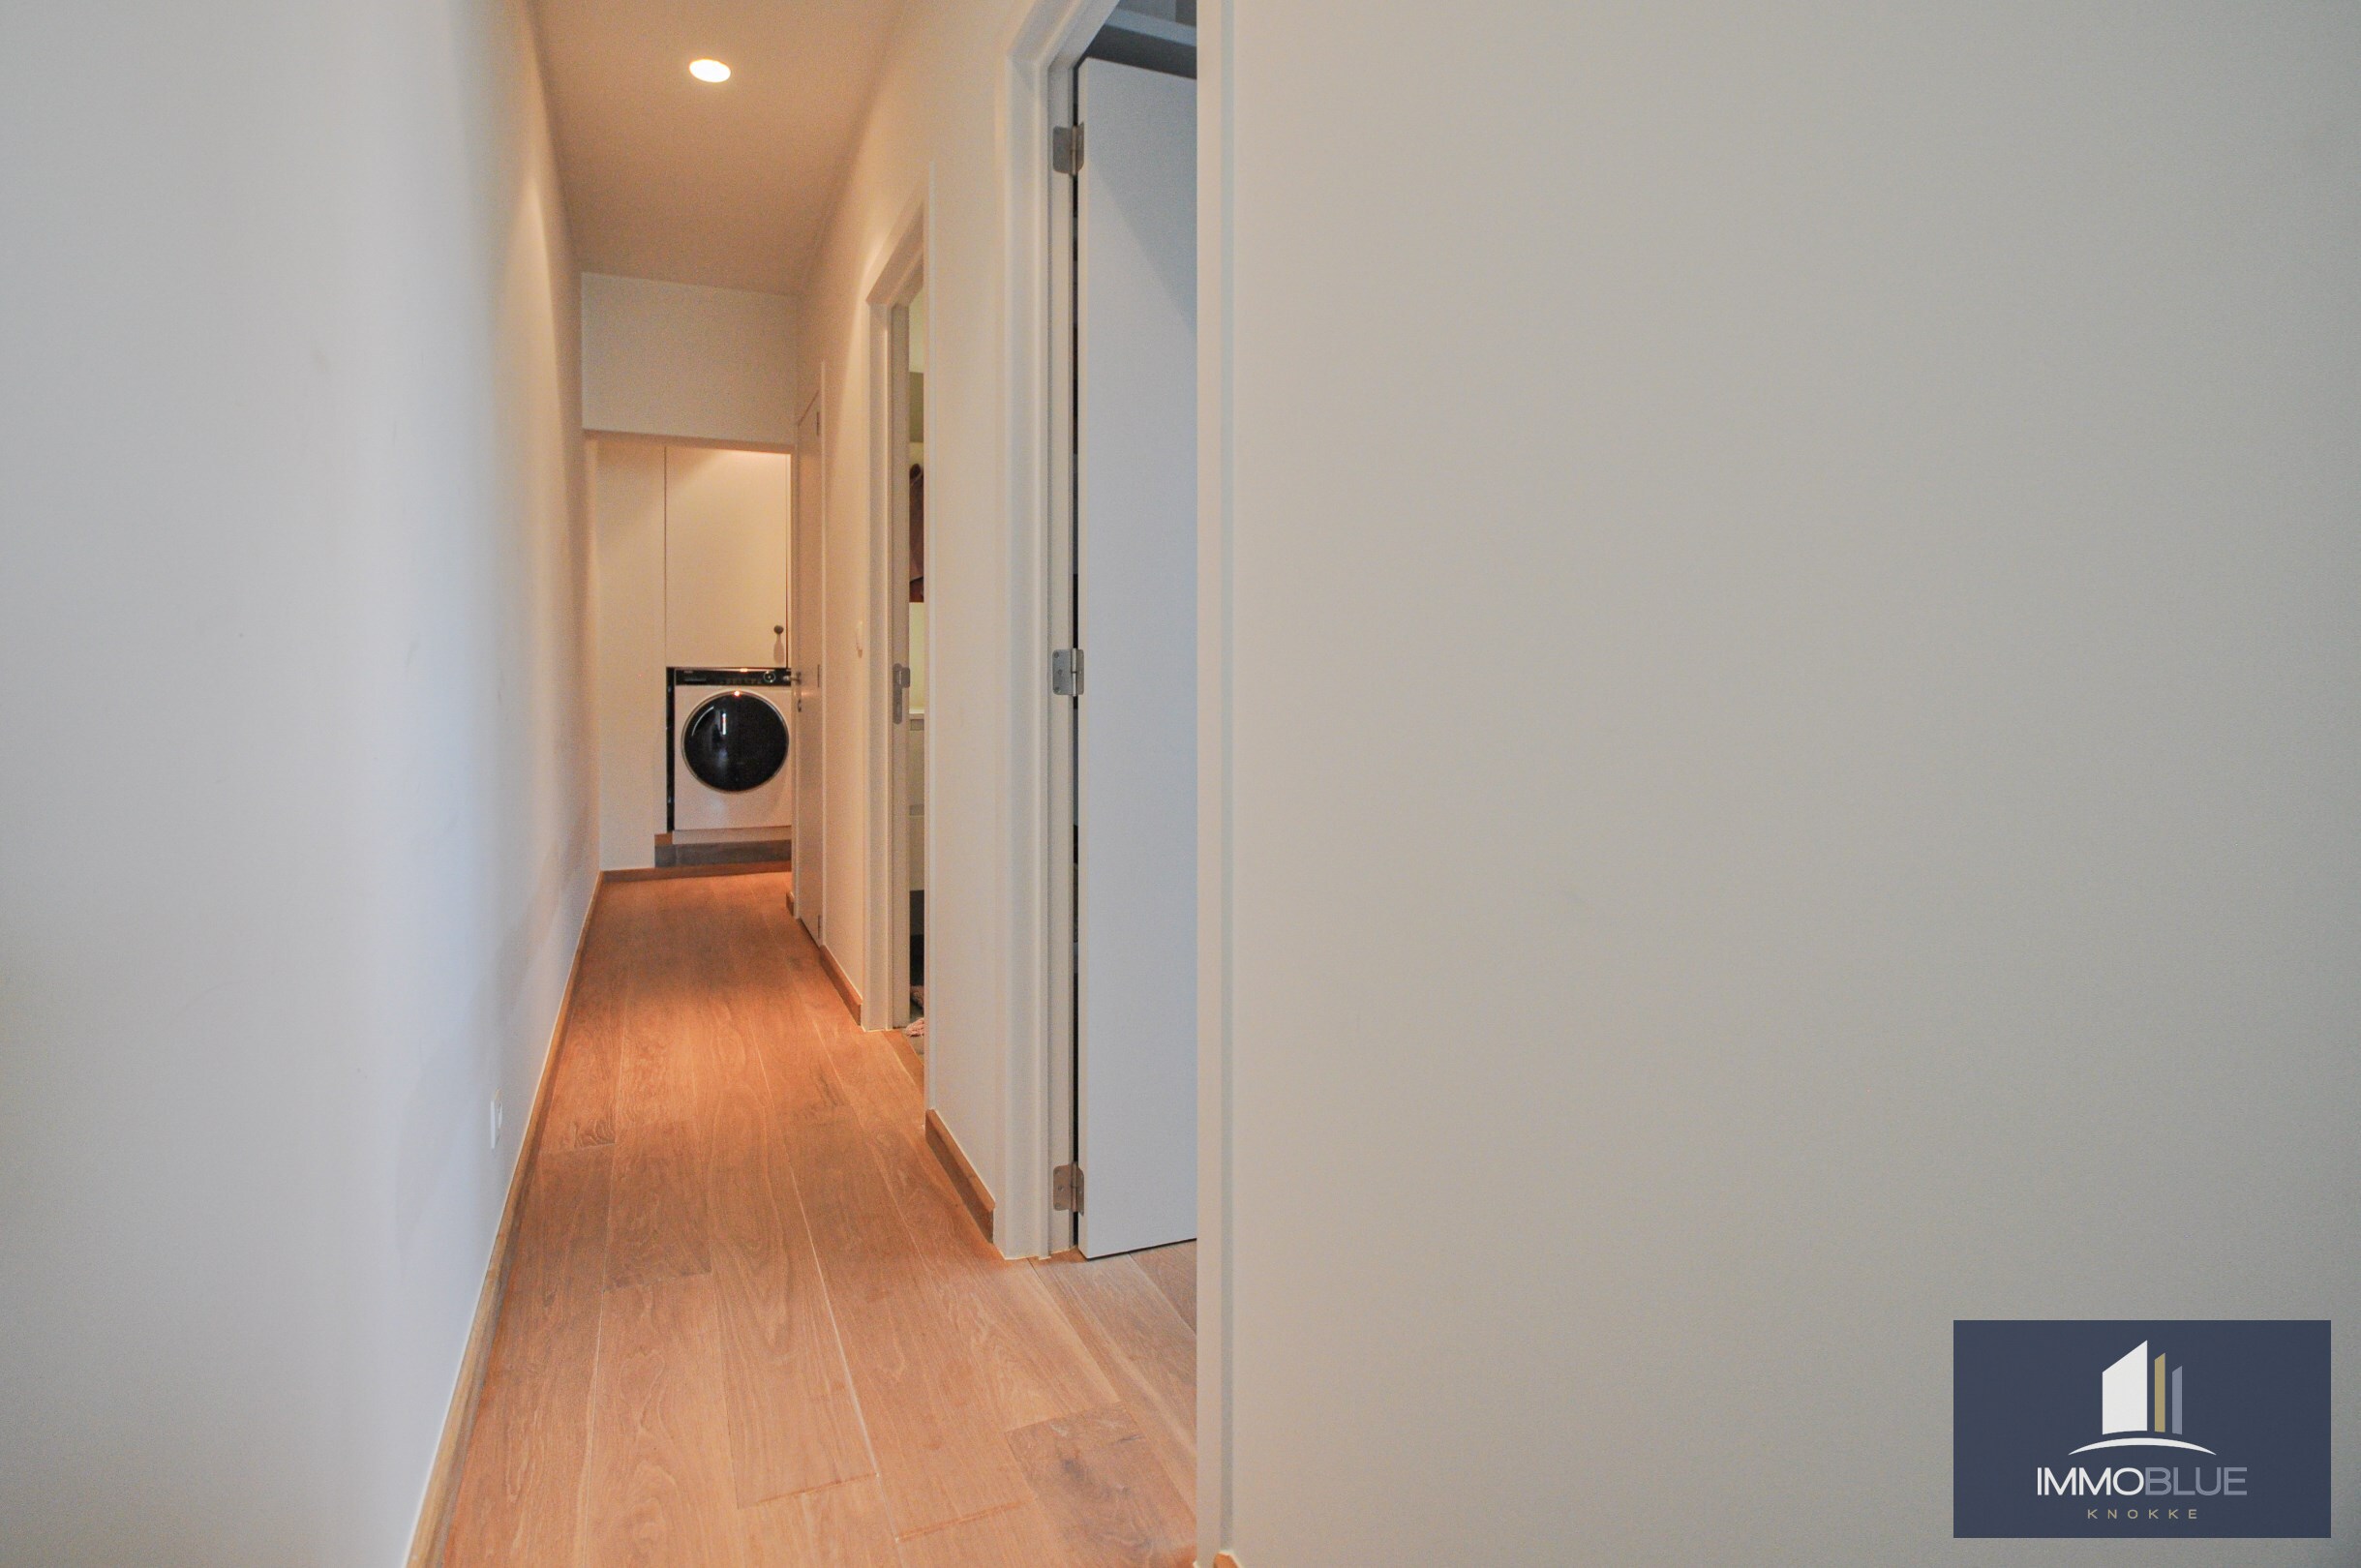 Centraal gelegen, lichtrijk en recent gerenoveerd appartement met terras in een kleine residentie. 